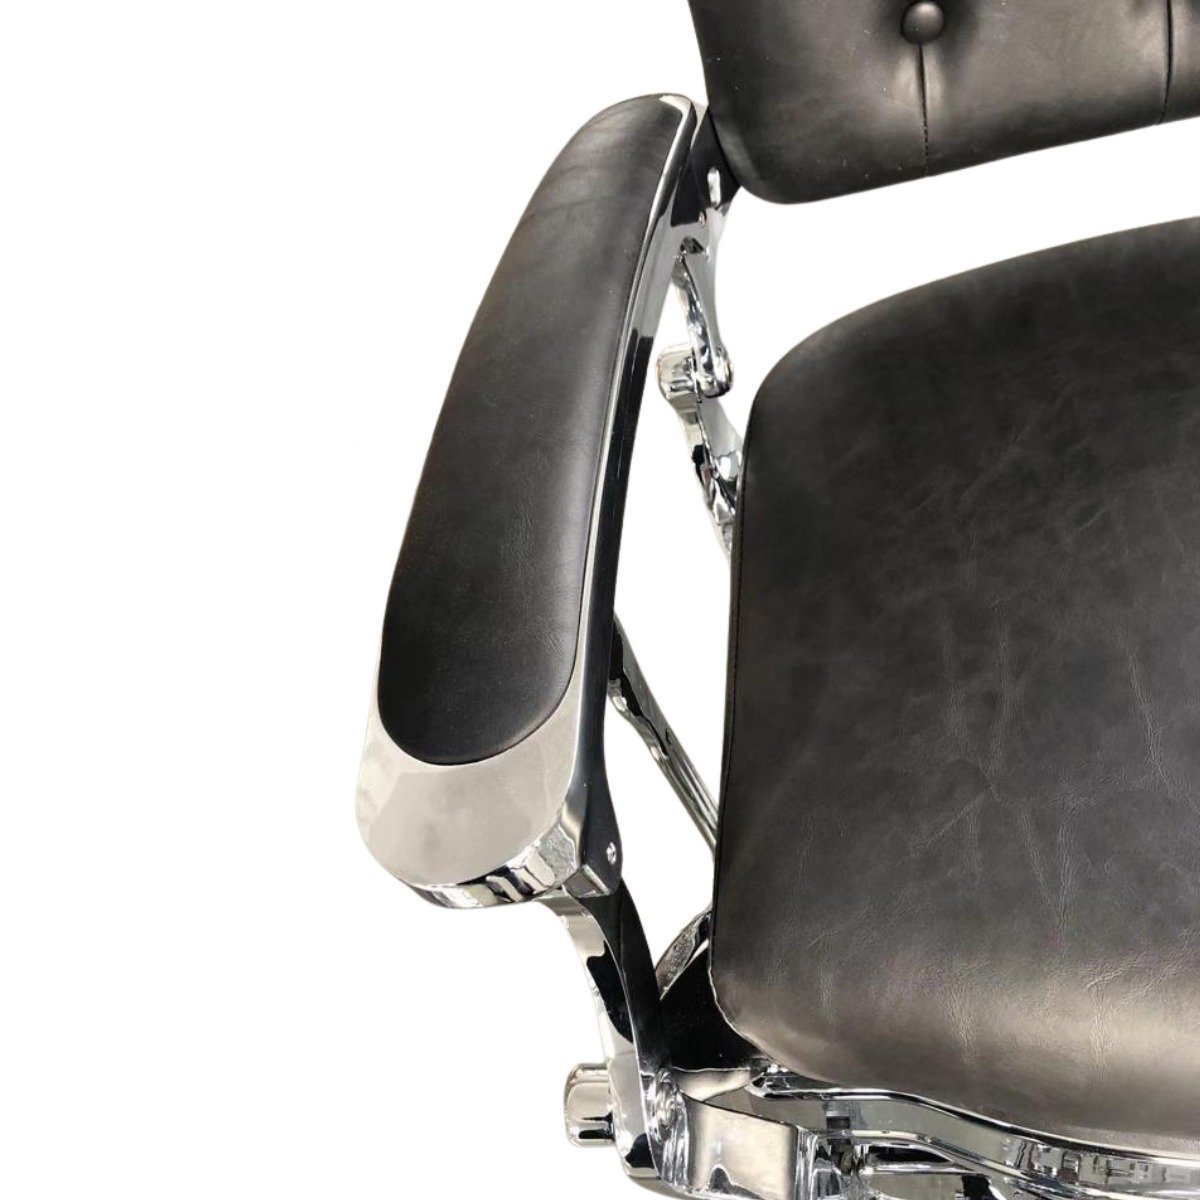 Cadeira de Barbeiro Reclinável Retro Base Preta